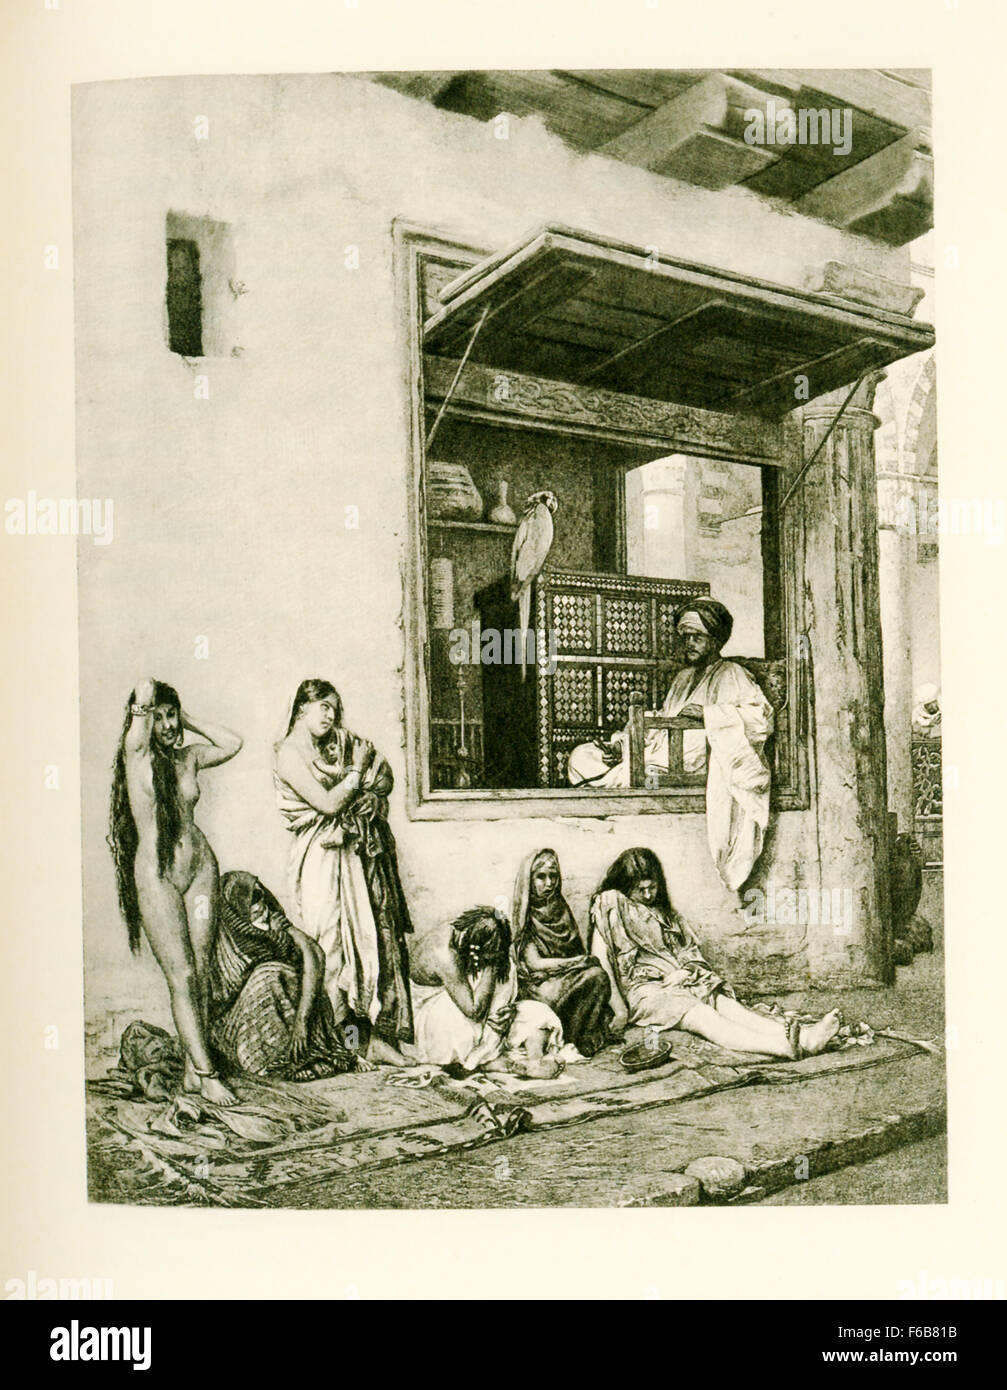 Questa illustrazione risale al 1903 e apparso nel libro della storia dell'Egitto da parte dell'egittologo francese Gaston Maspero. Essa mostra uno schiavo egiziano merchant con le donne che ha in vendita nel suo mercato. Foto Stock